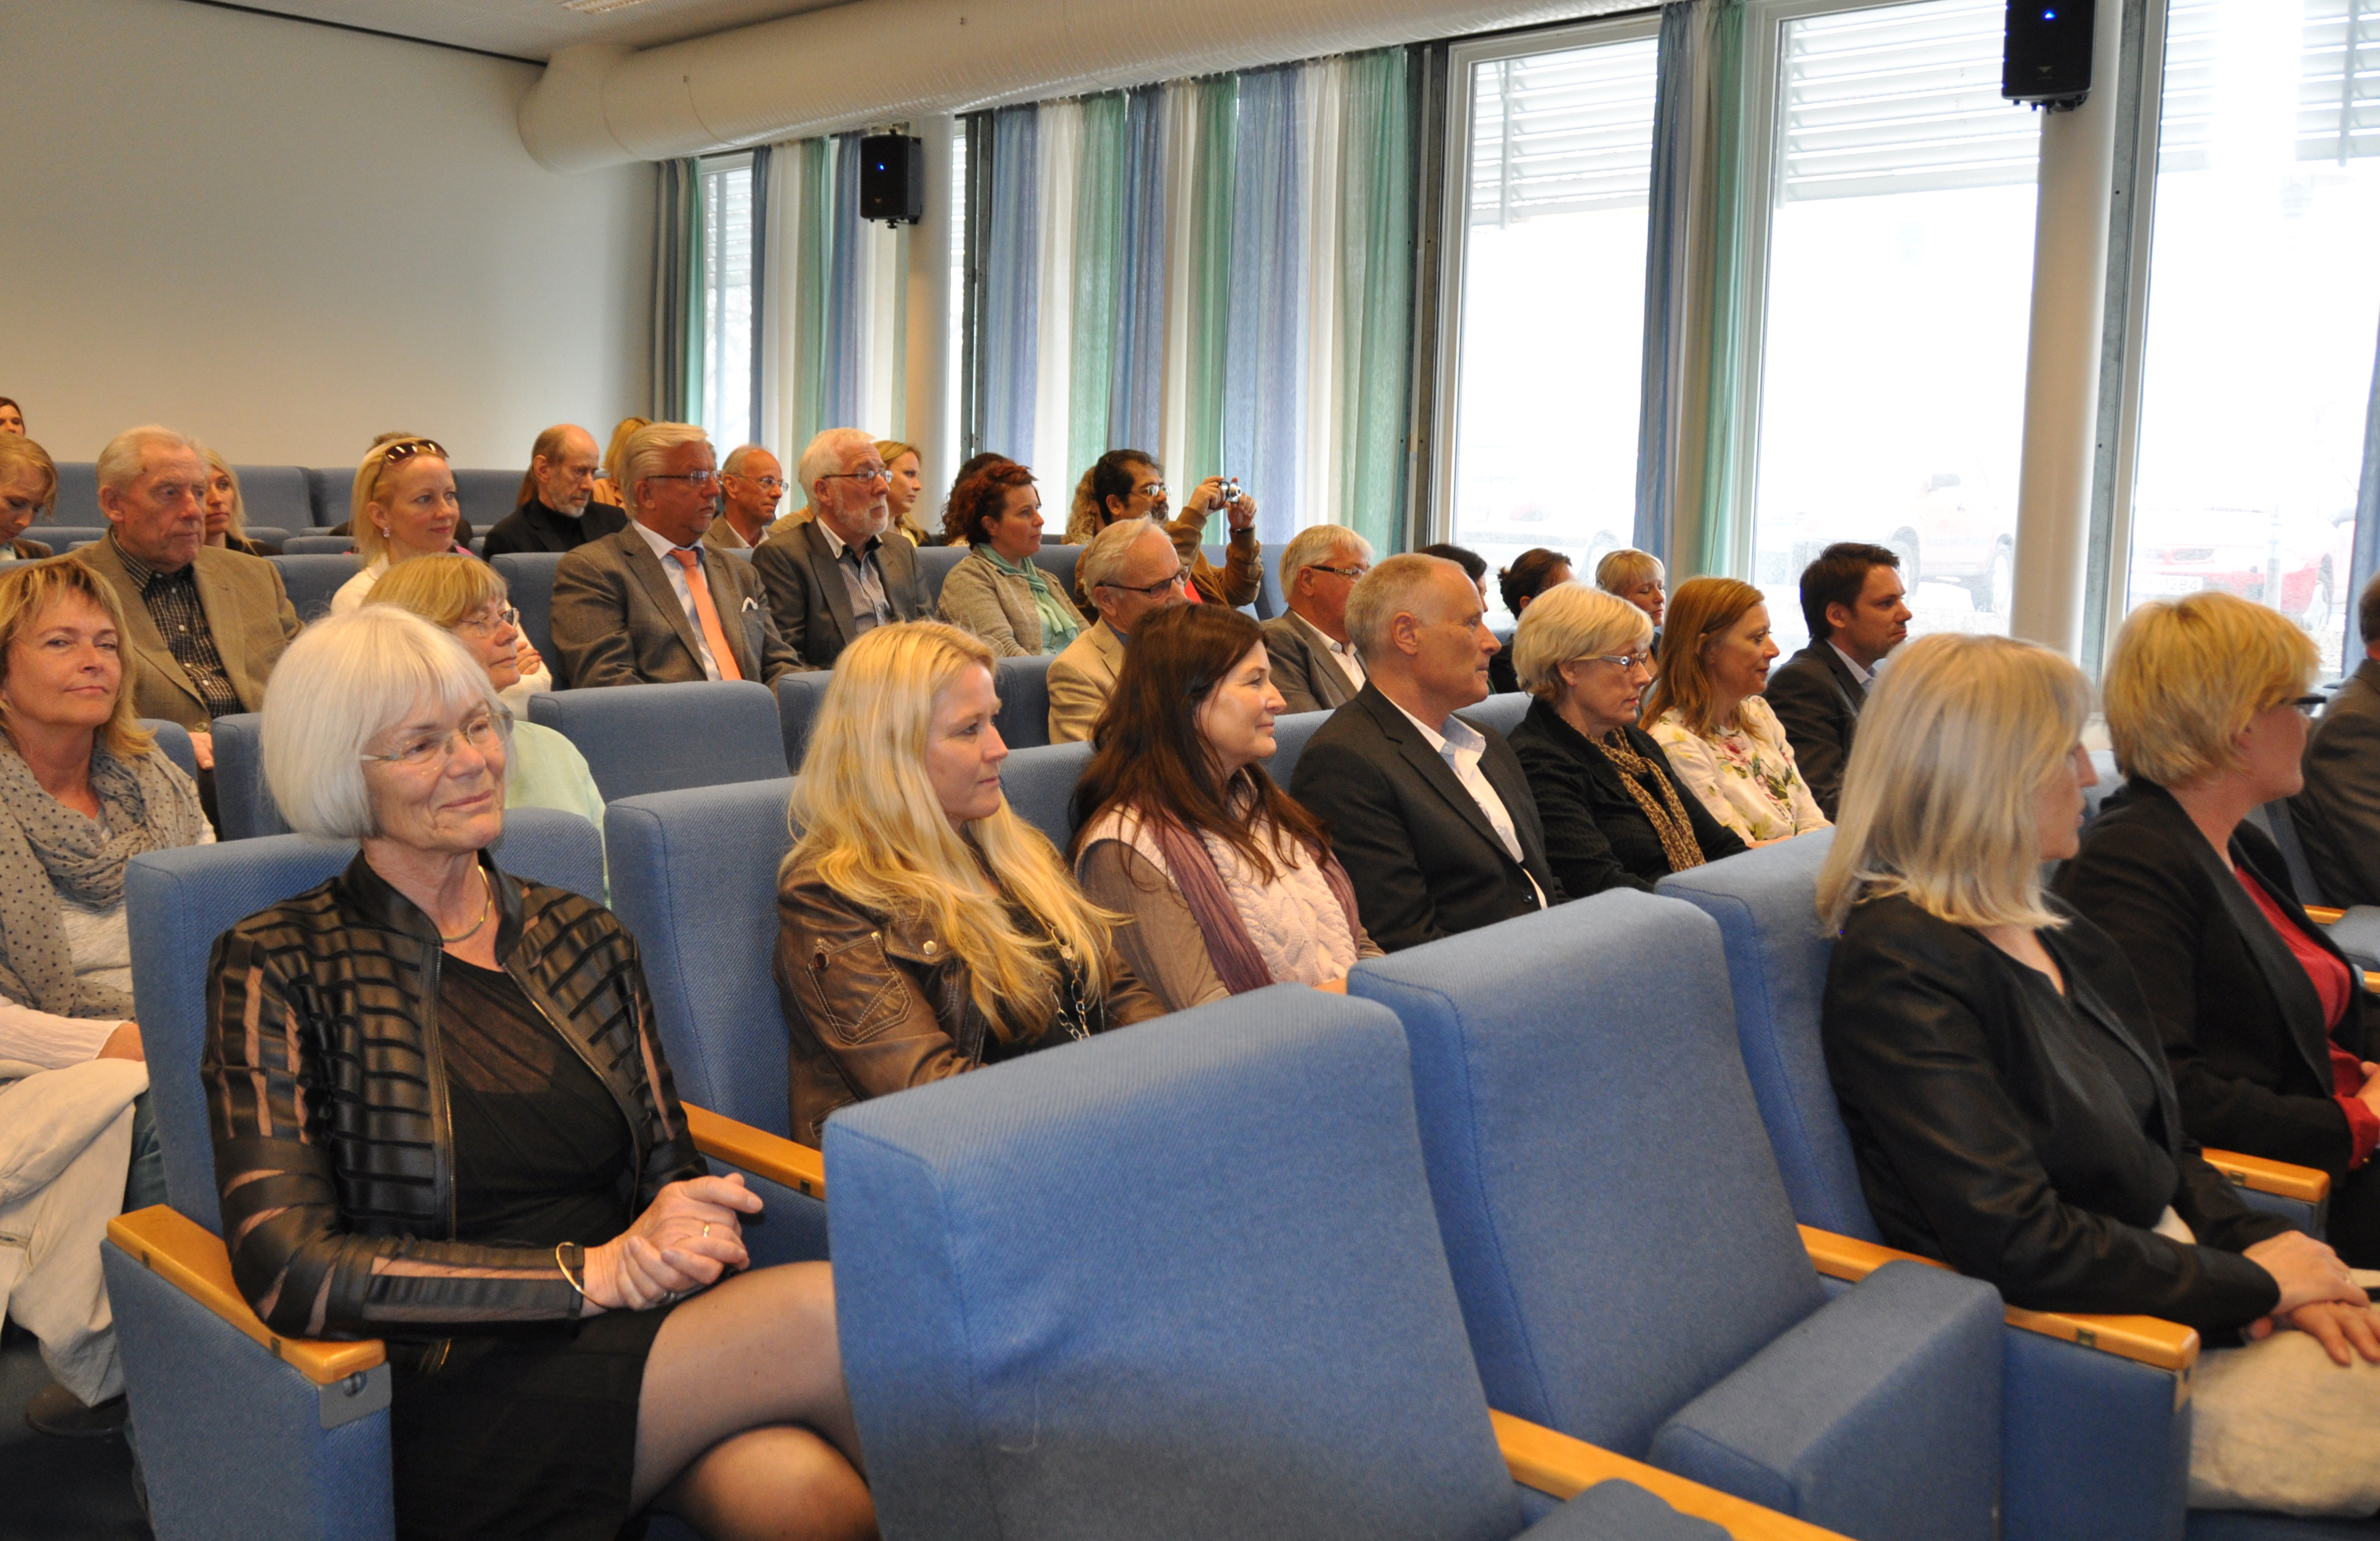 Publikum i salen under den offisielle åpningen av Læringsmiljøsenteret 8. mai 2013.